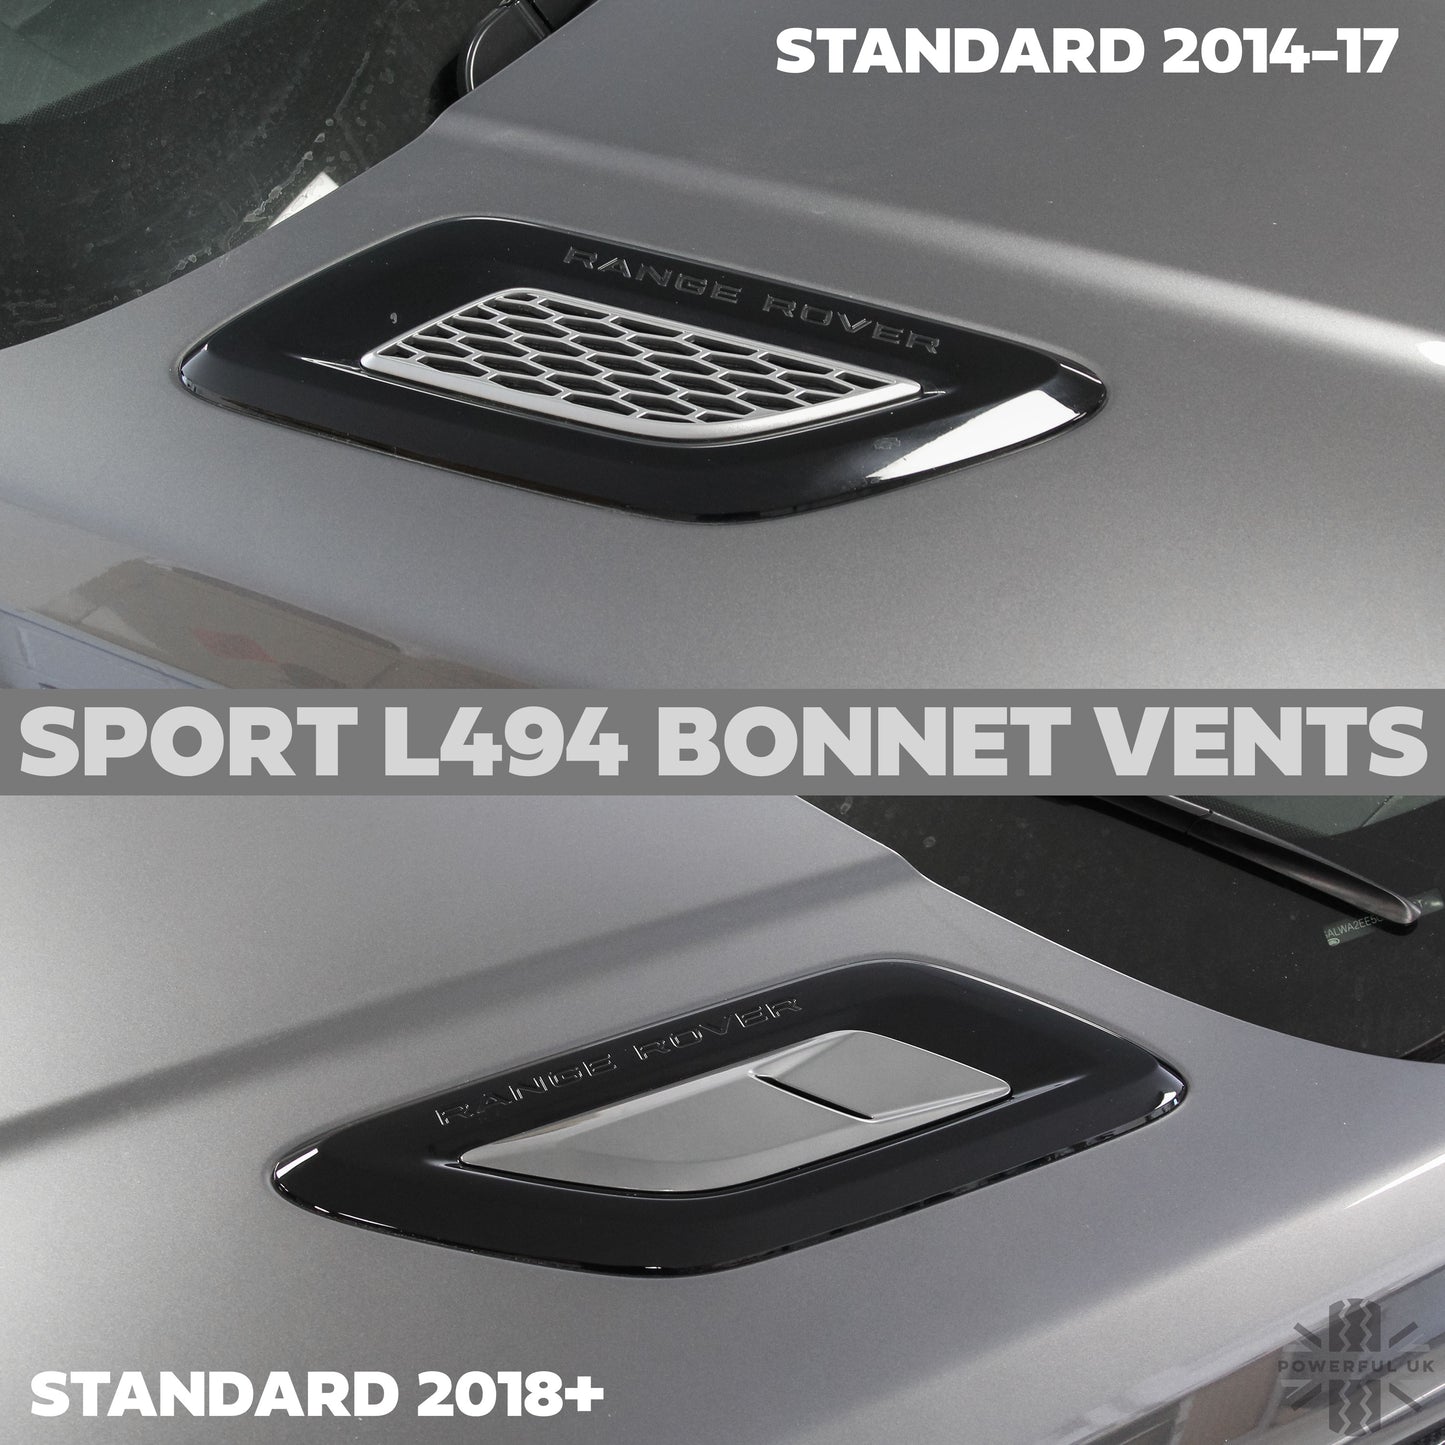 Bonnet Vent 'Double Louvre' Inserts for Range Rover Sport L494 - Corris Grey